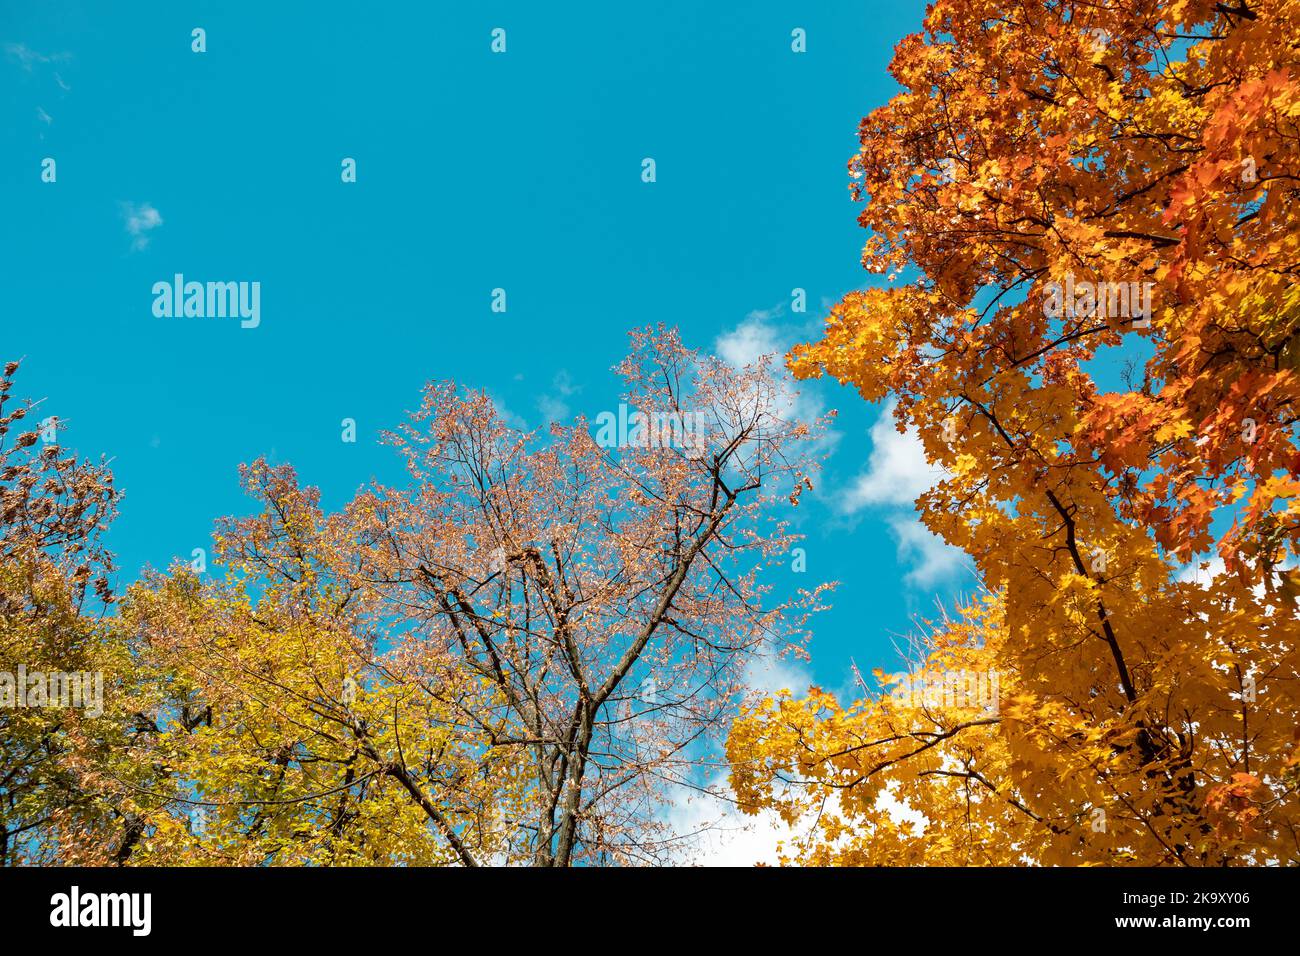 Autunno stagione d'oro guardare in su. Rami d'acero con foglie gialle su cielo blu con nuvole, fondo naturale autunnale della foresta Foto Stock